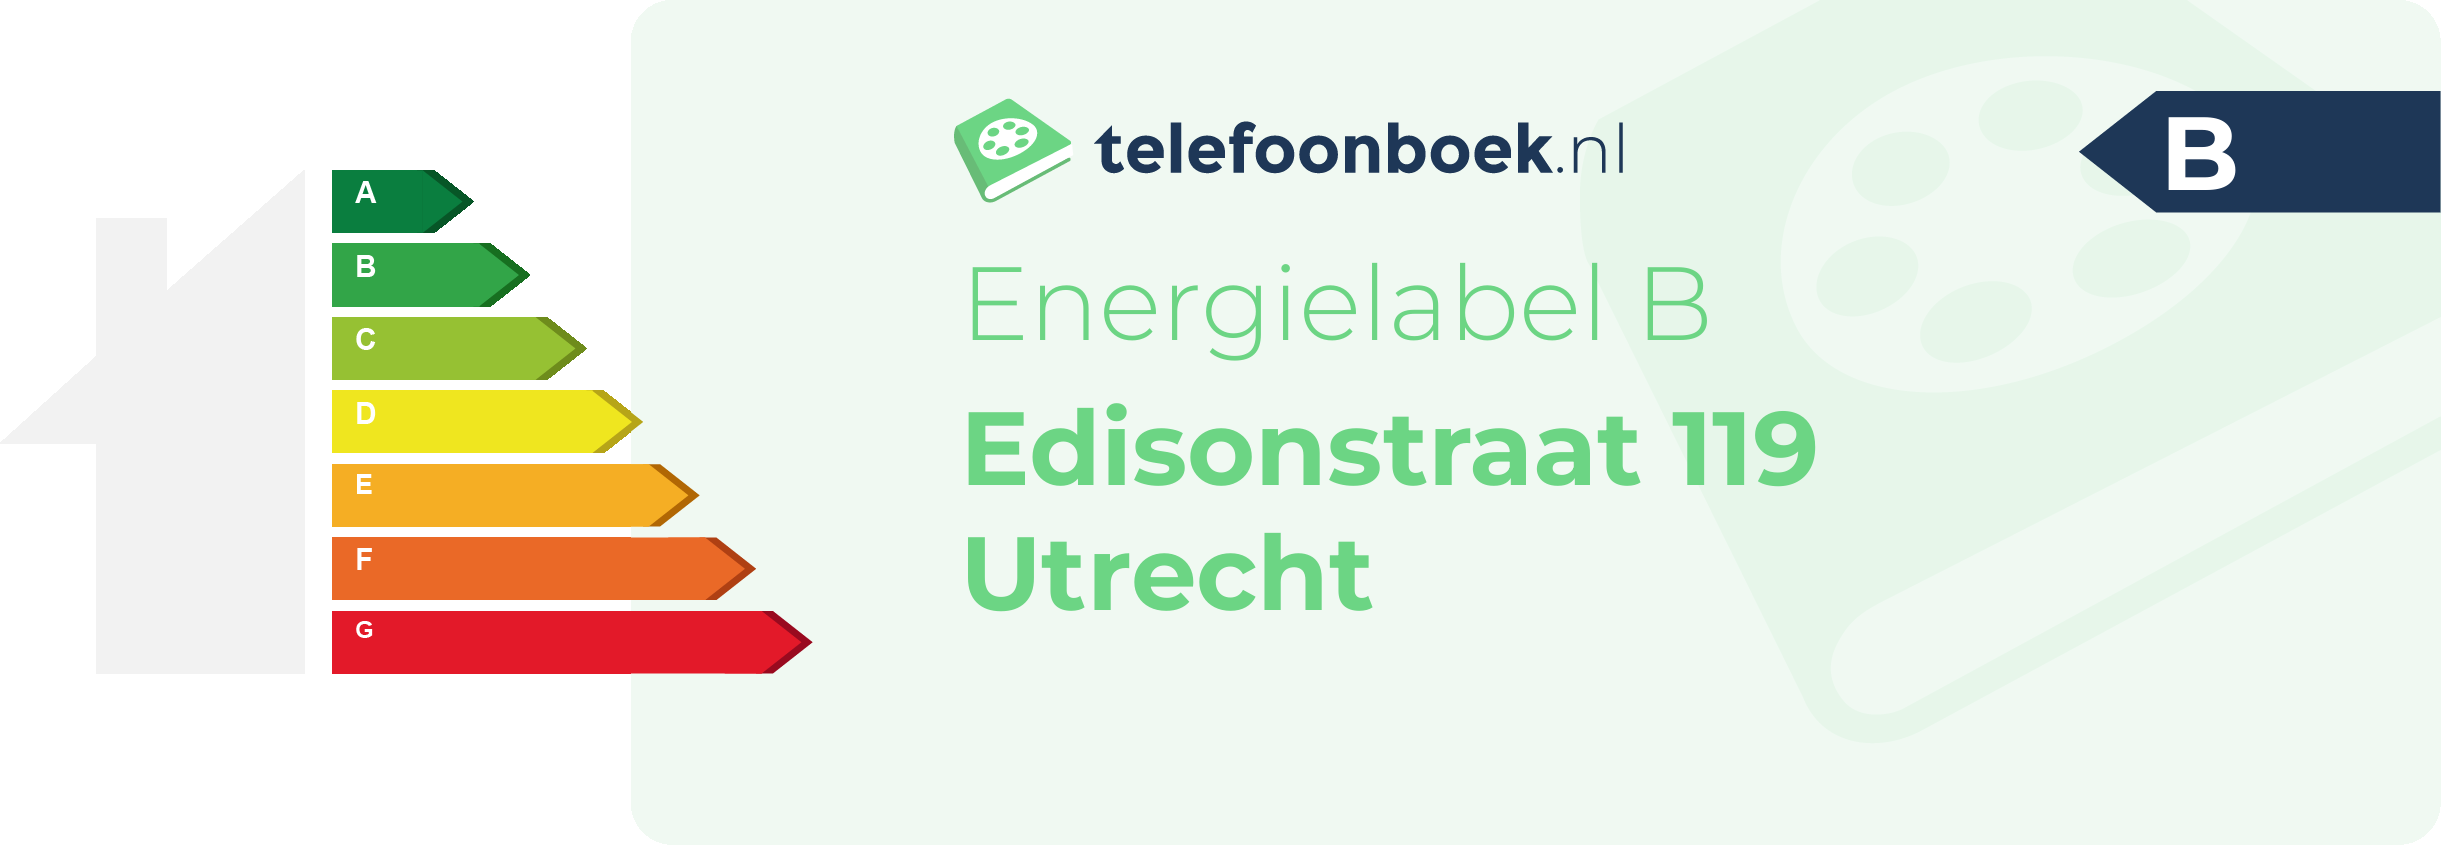 Energielabel Edisonstraat 119 Utrecht